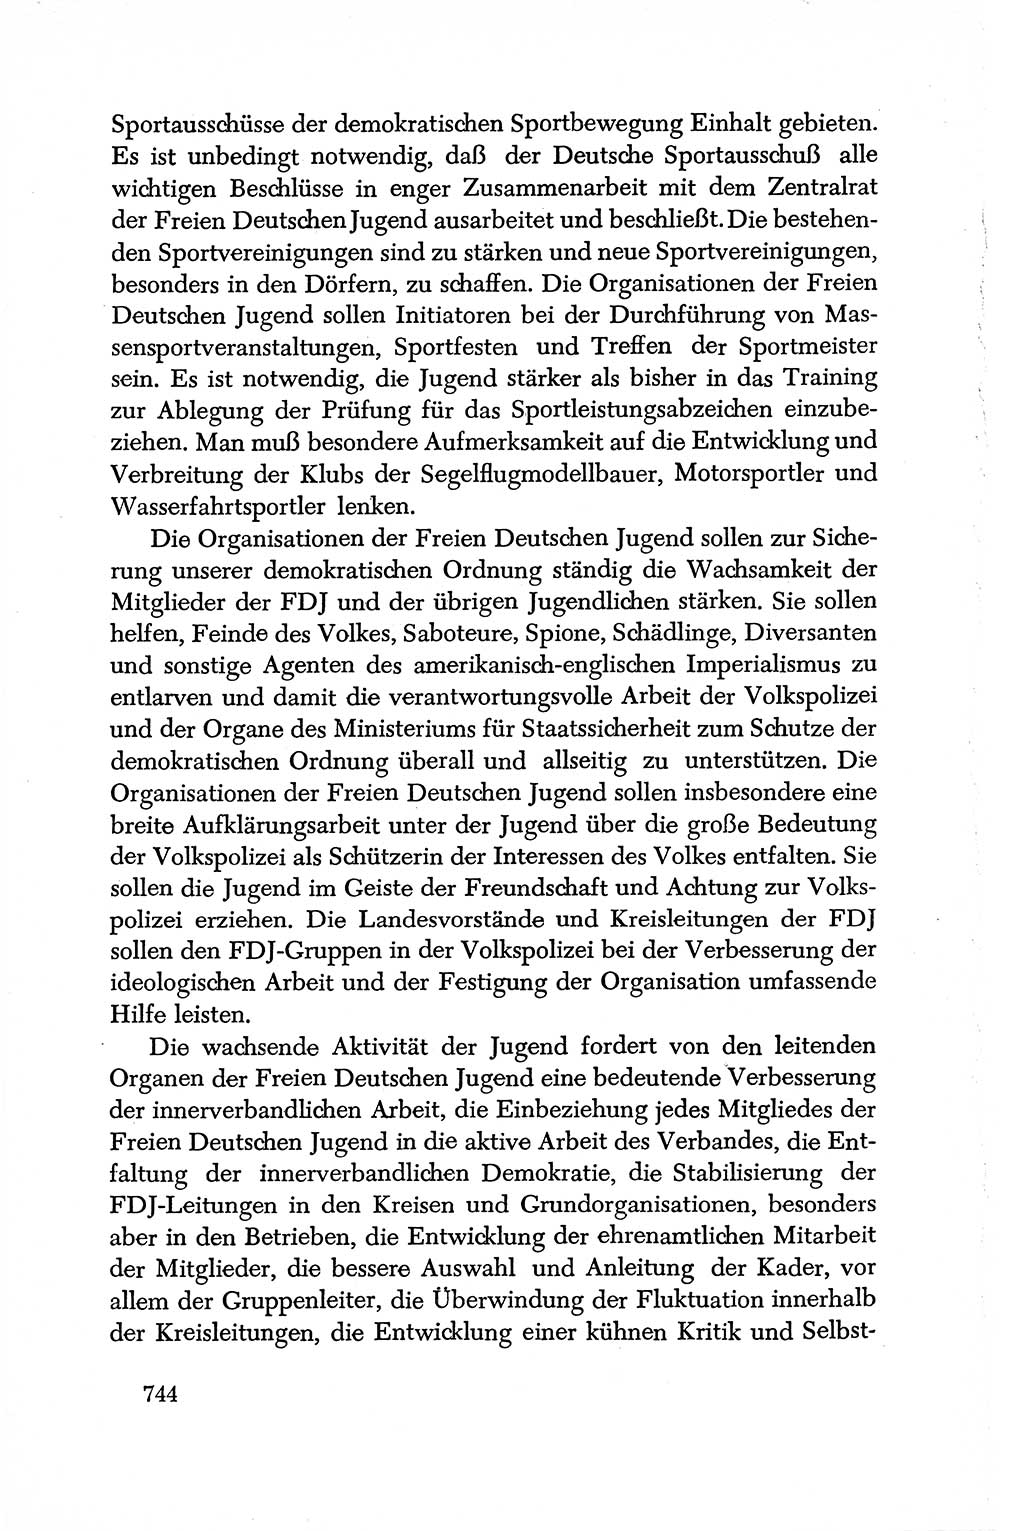 Dokumente der Sozialistischen Einheitspartei Deutschlands (SED) [Deutsche Demokratische Republik (DDR)] 1950-1952, Seite 744 (Dok. SED DDR 1950-1952, S. 744)